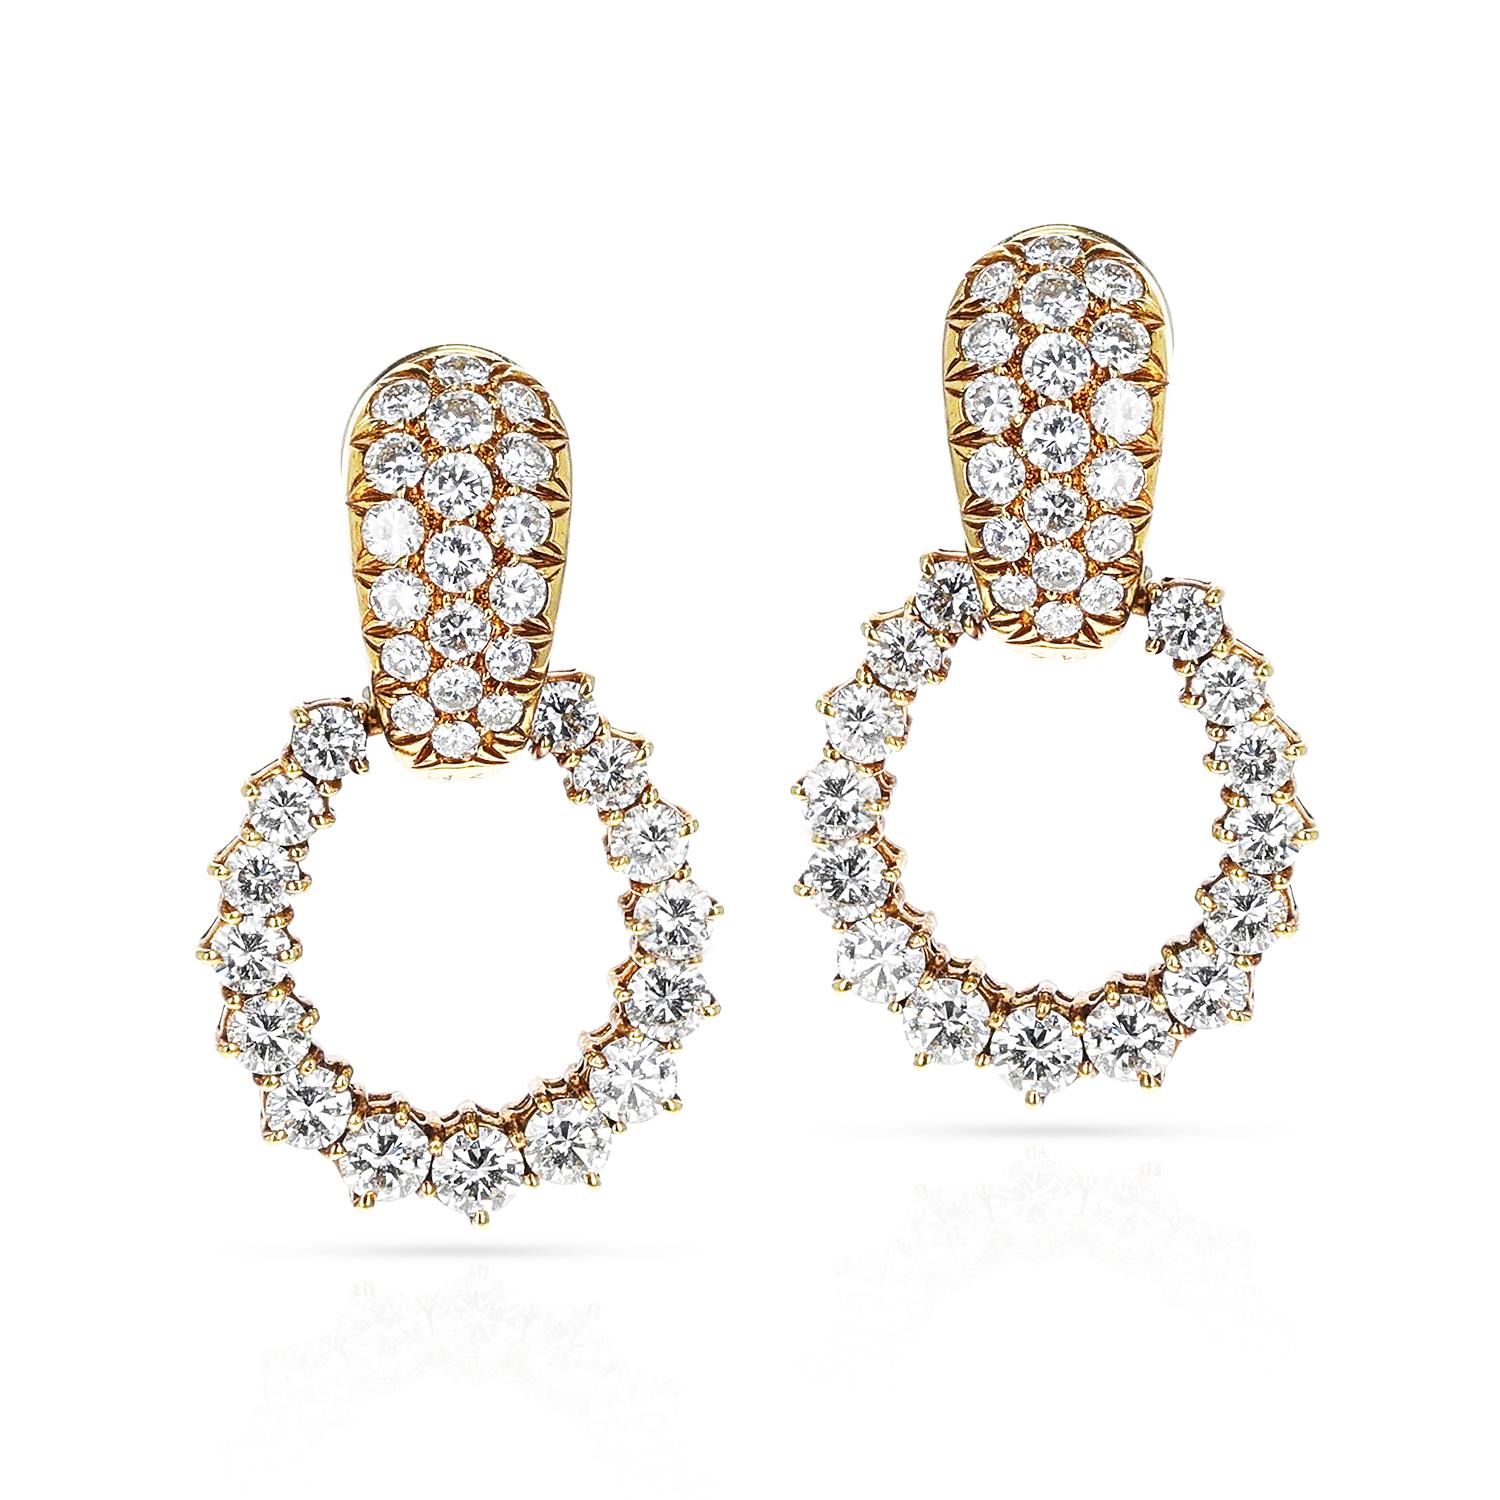 A pair of Van Cleef & Arpels Diamond Dangling Hoop Earrings made in 18 Karat Gold. The length of the earring is 1.25.